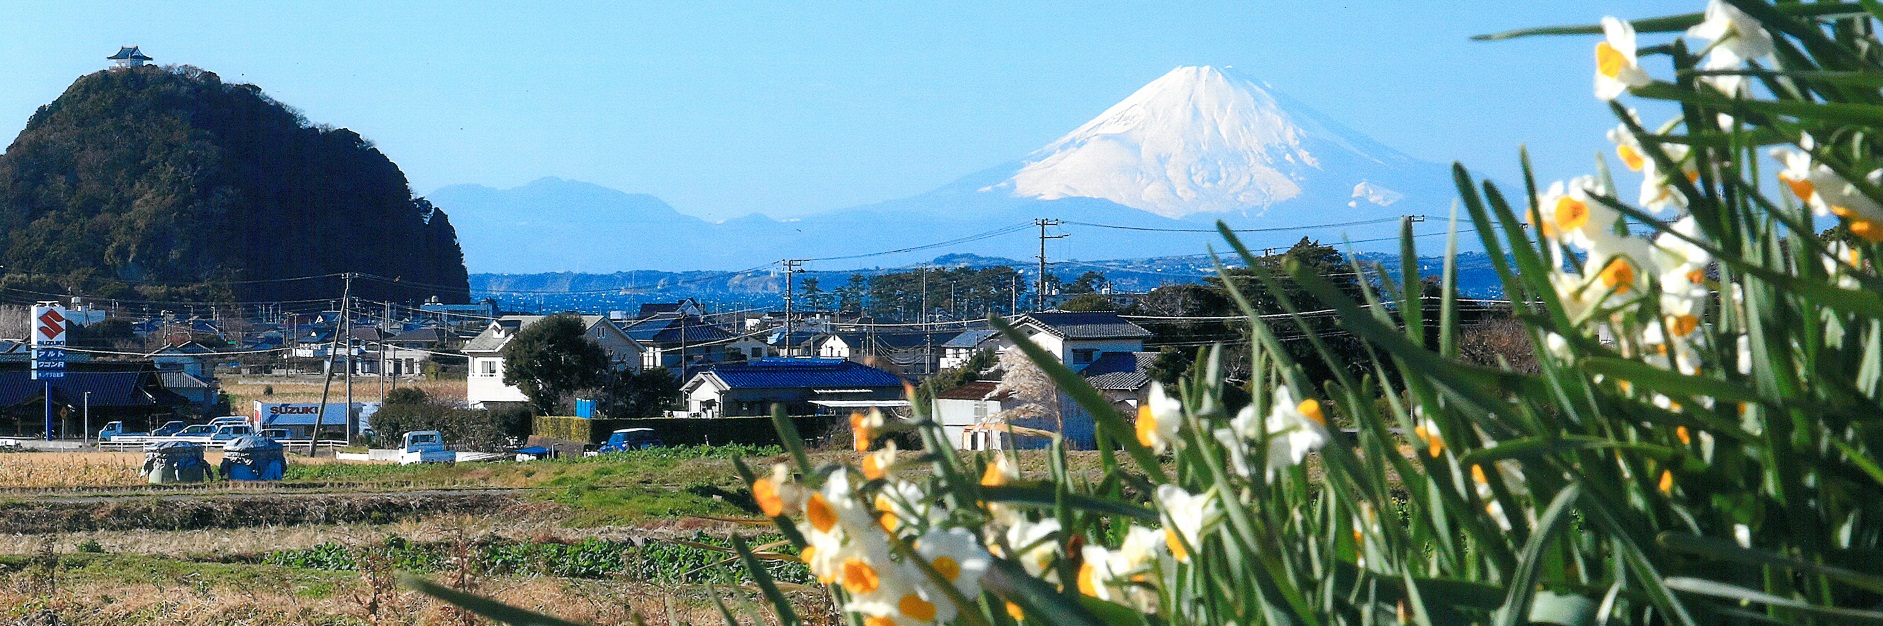 富士山と大黒山と水仙